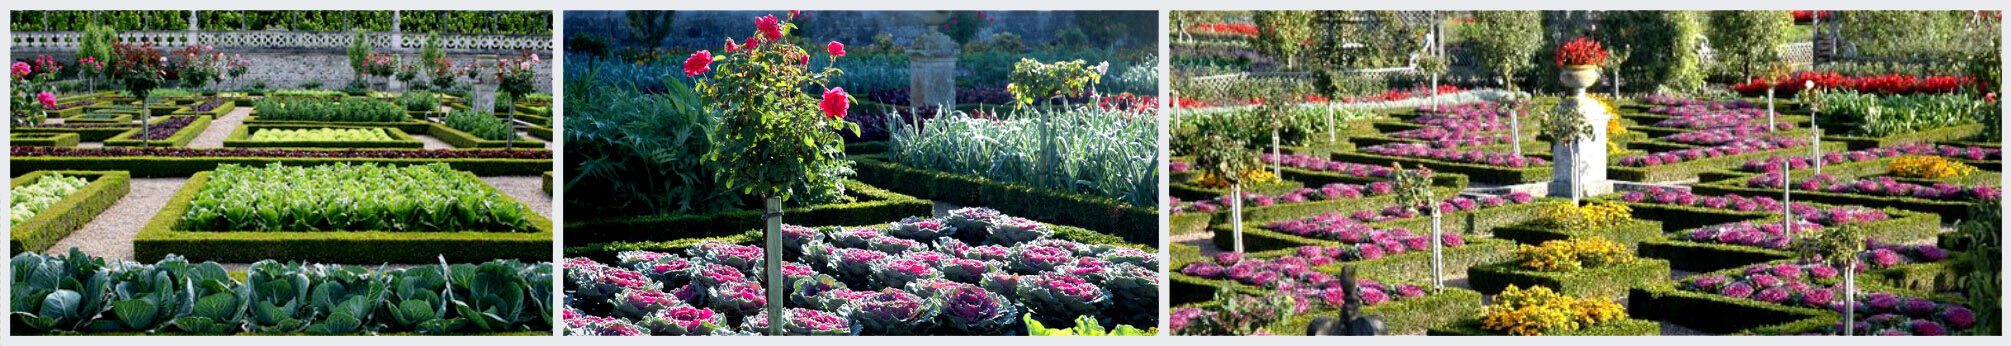 Щоб вже цієї весни Ваш ділянку біля дачі прикрасив декоративний сад або город, замовте безкоштовний виїзд садівника з 